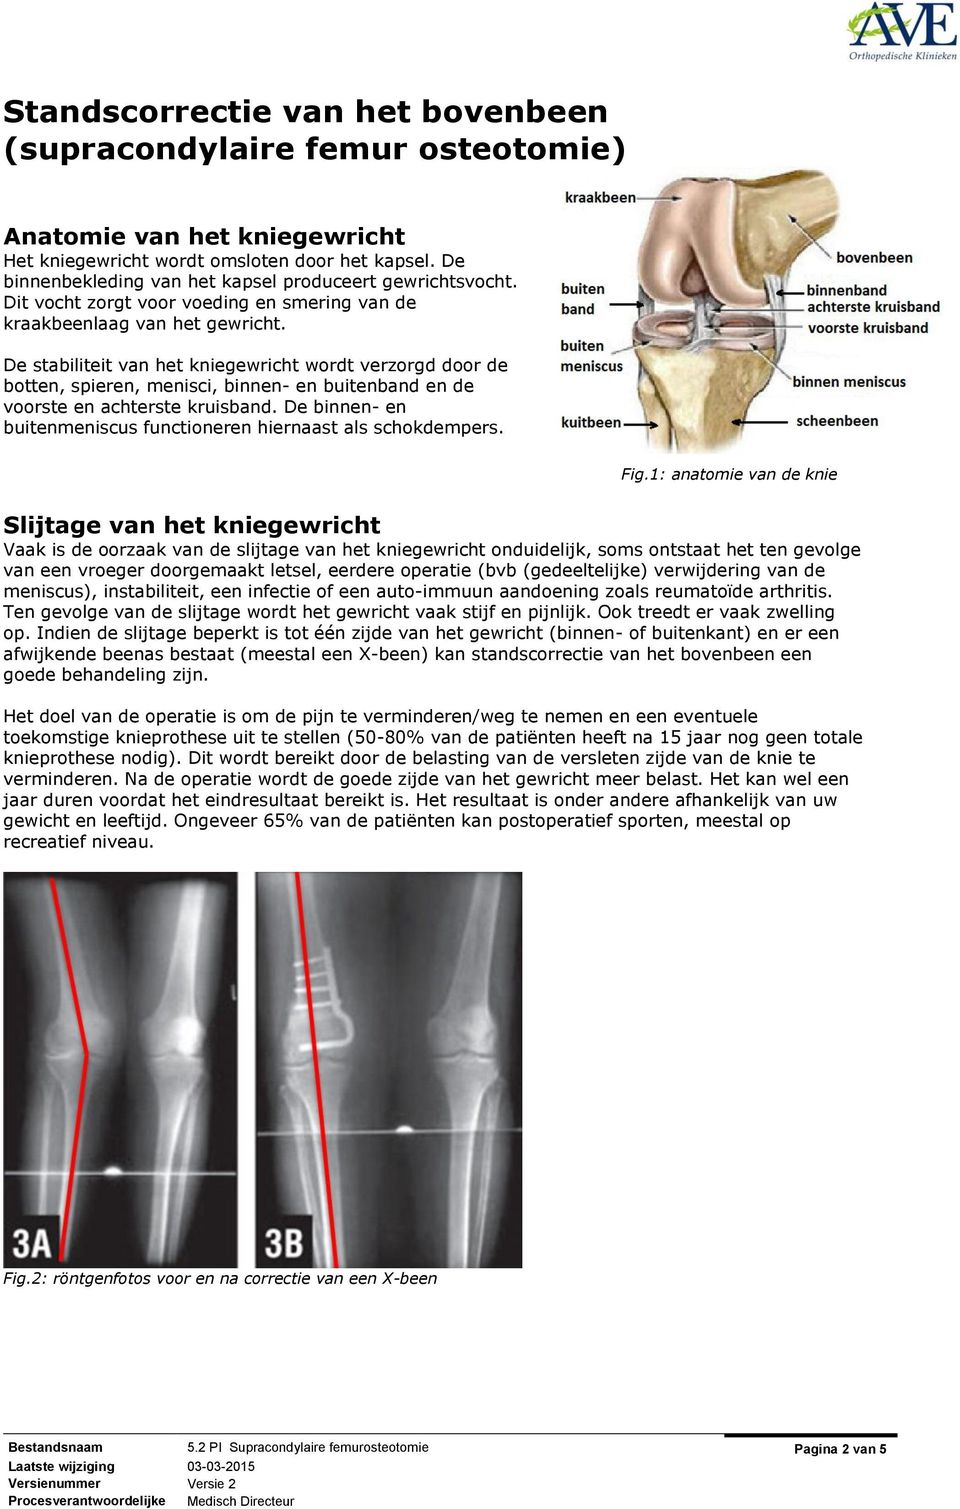 De stabiliteit van het kniegewricht wordt verzorgd door de botten, spieren, menisci, binnen- en buitenband en de voorste en achterste kruisband.